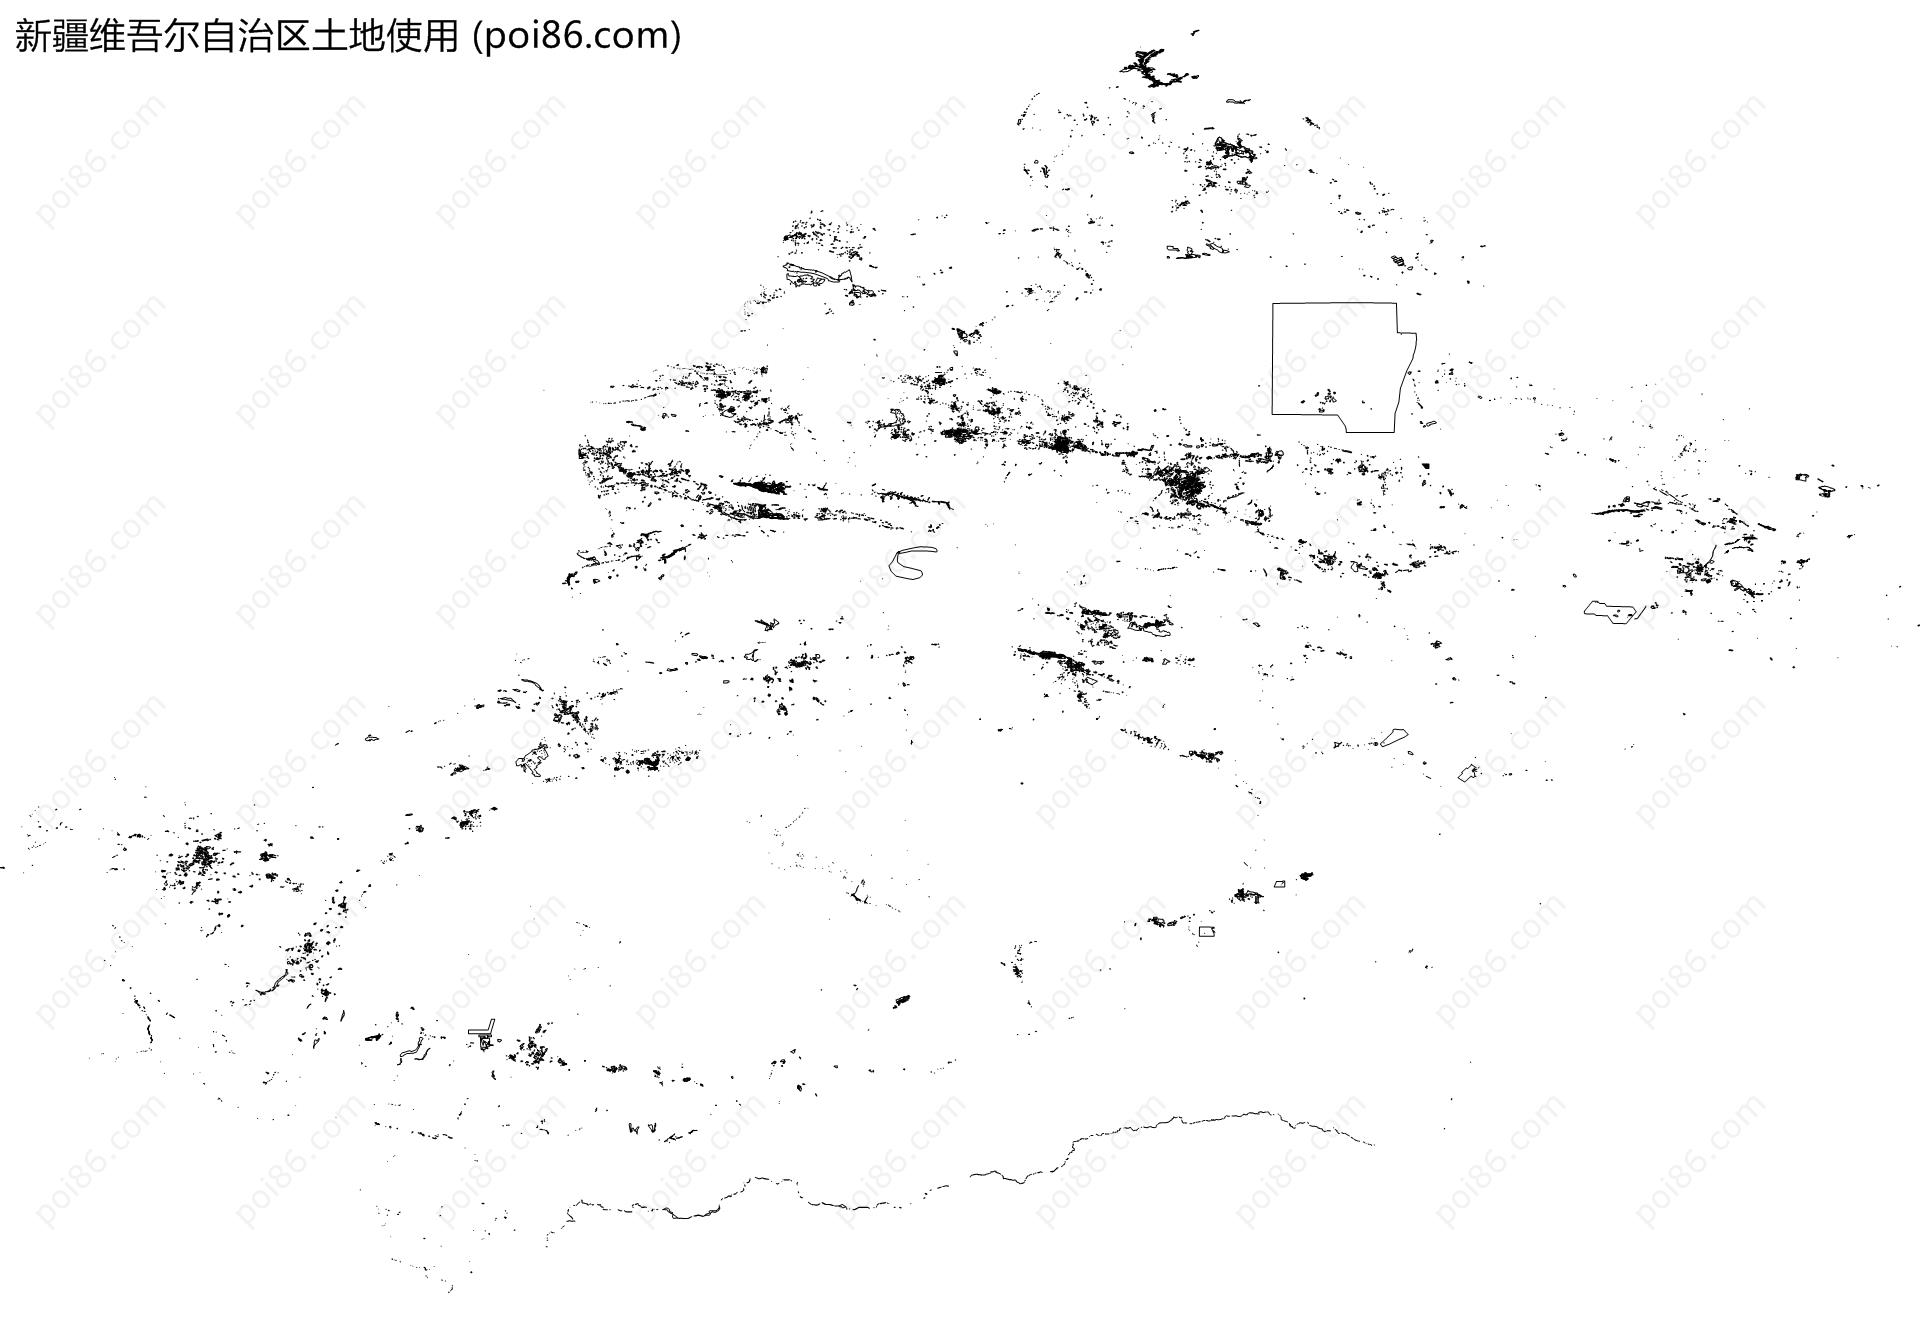 新疆维吾尔自治区土地使用地图